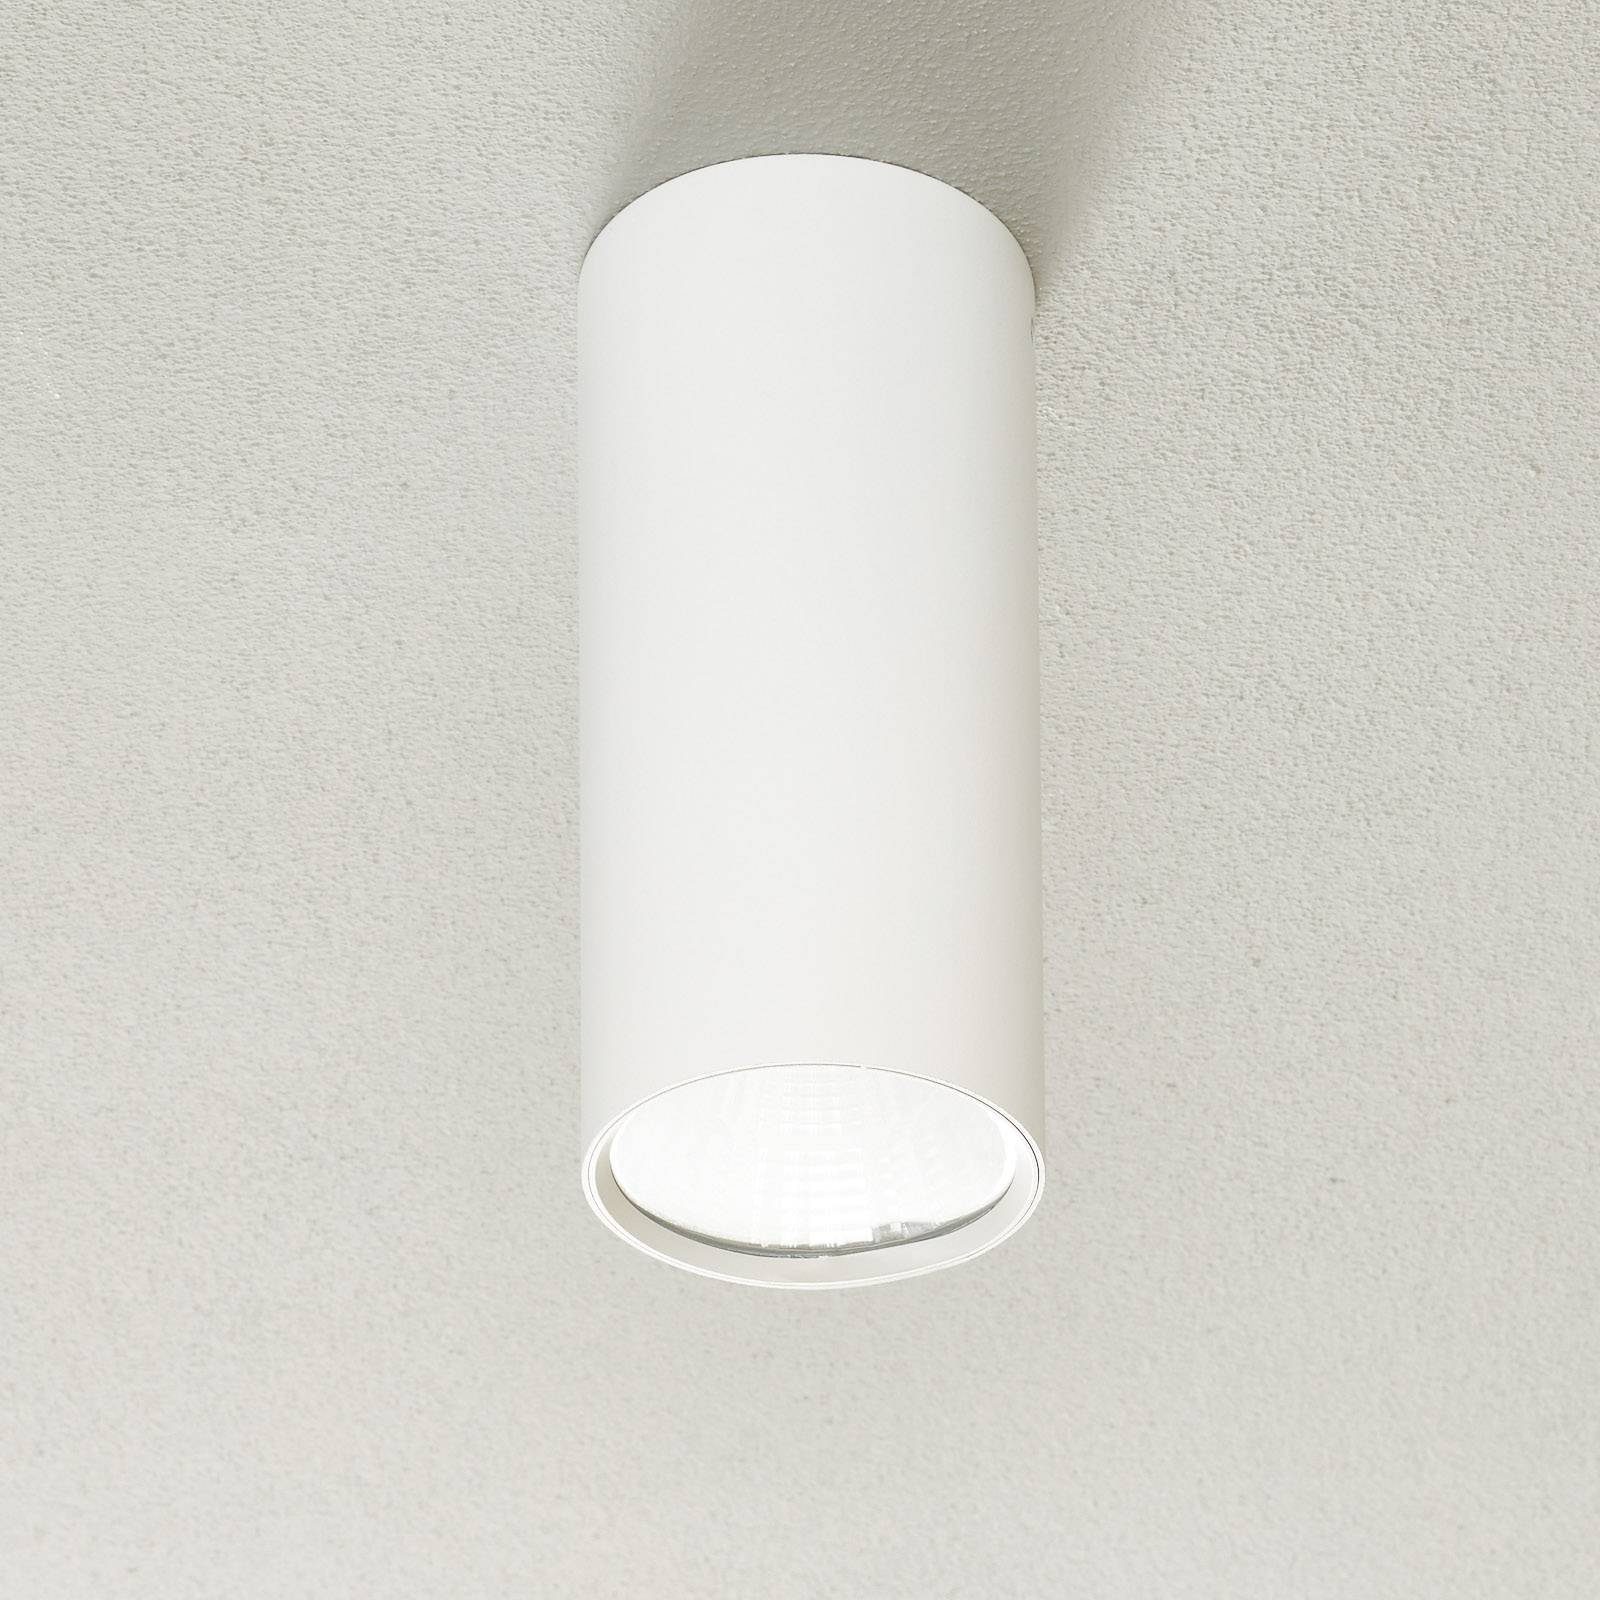 Lucande Deckenspots Takio, LED-Lampen, warmweiß, Modern, Stahl, weiß, 1 flammig, inkl. Leuchtmittel, Deckenleuchte